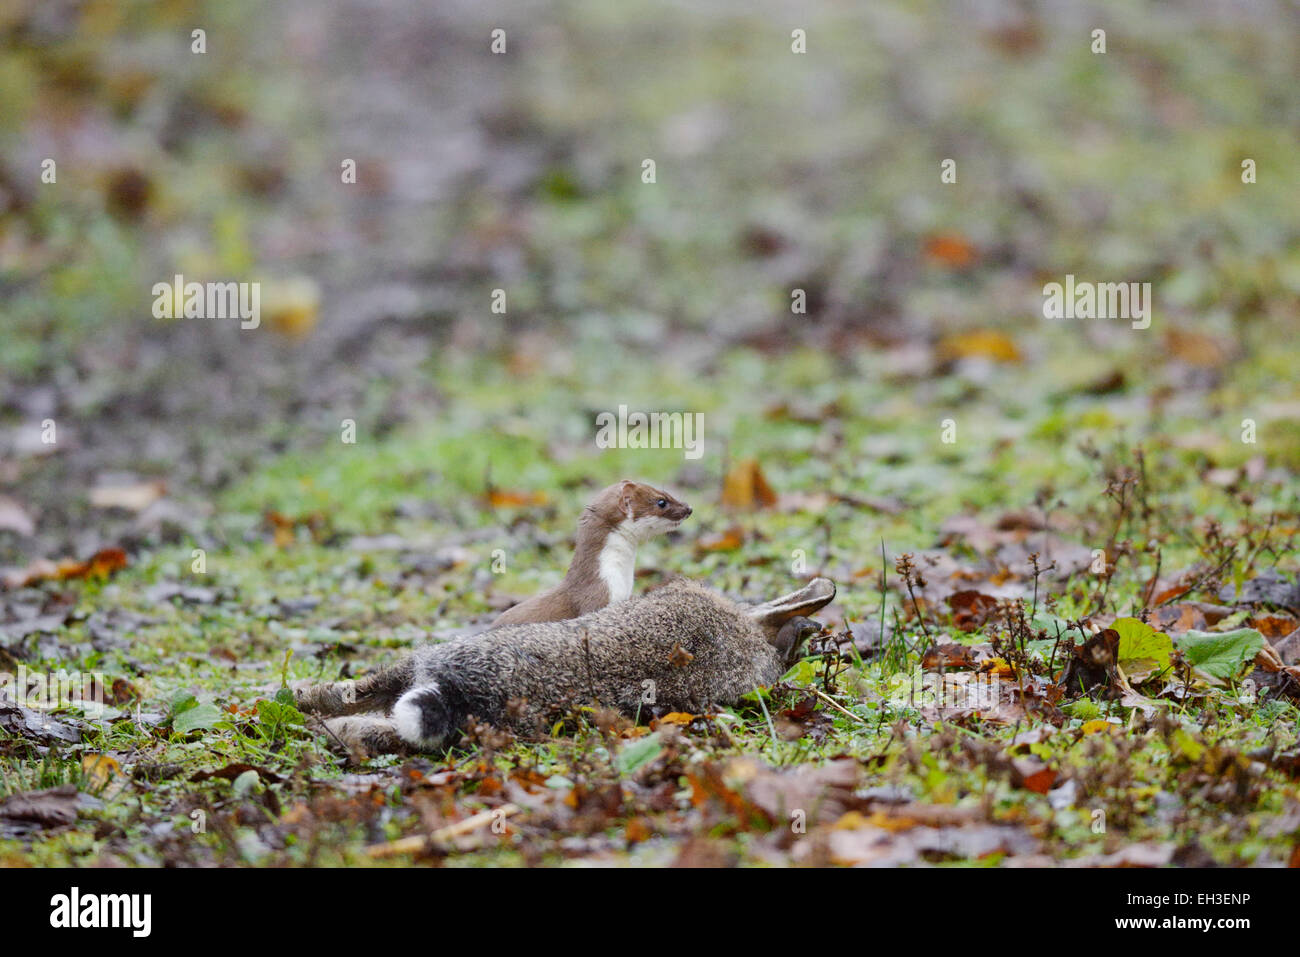 Stoat, Mustela erminea, with freshly killed or paralysed Rabbit, Wales, UK Stock Photo